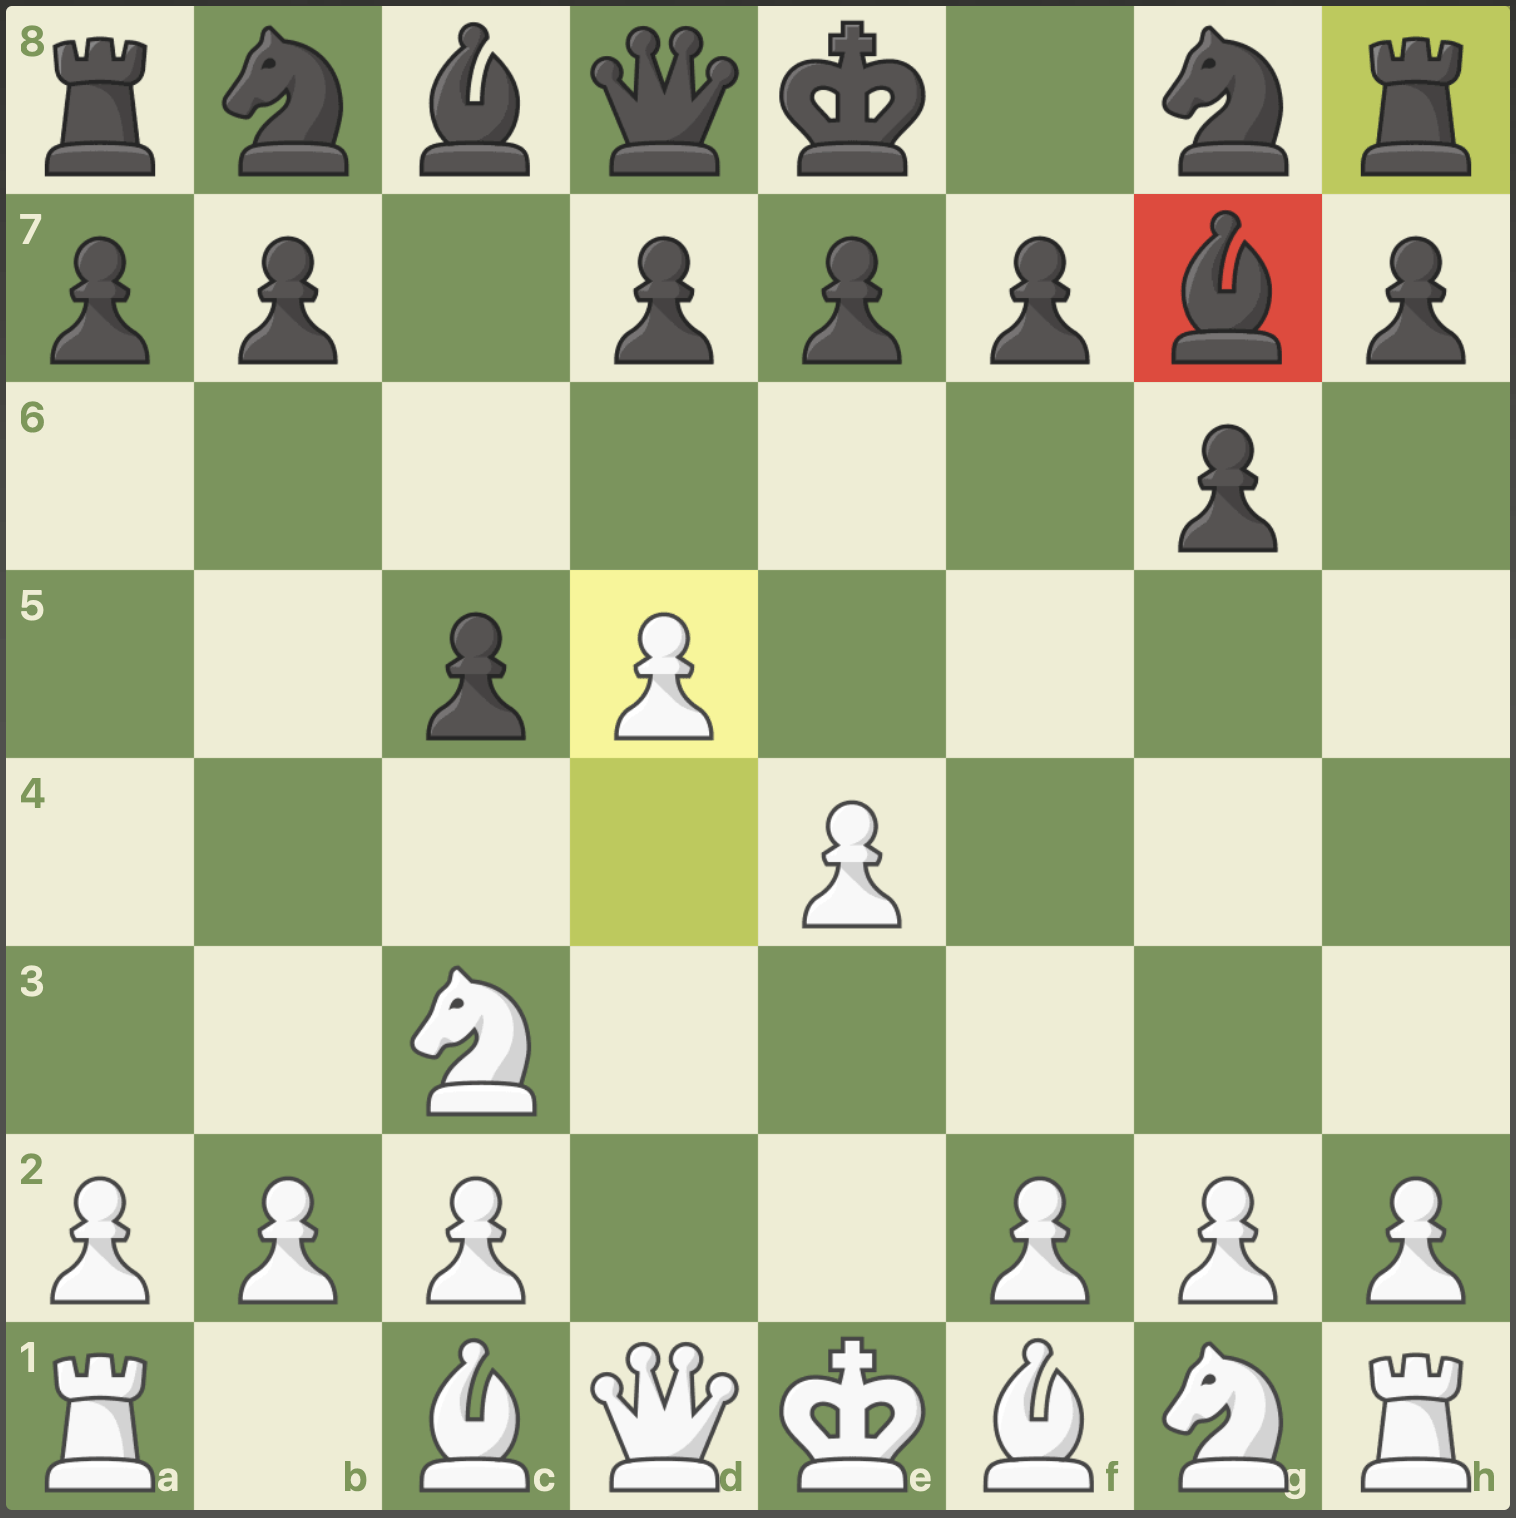 ESSA linha da índia do Rei é boa até DEMAIS no xadrez!! 